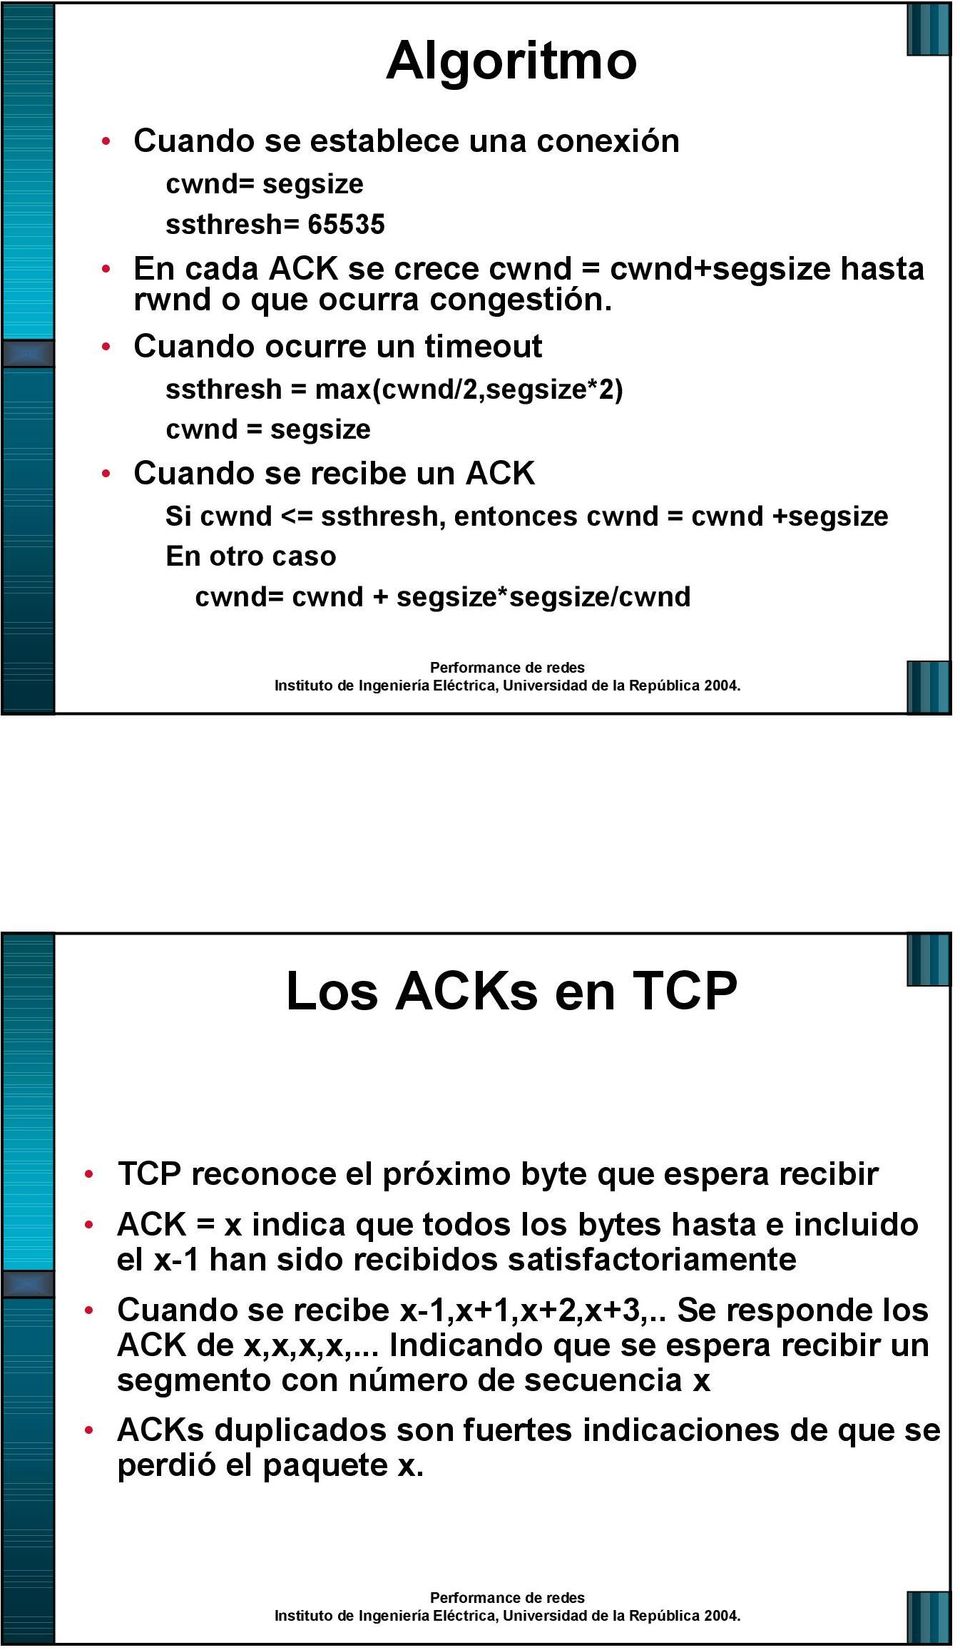 segsize*segsize/cwnd Los ACKs en TCP TCP reconoce el próximo byte que espera recibir ACK = x indica que todos los bytes hasta e incluido el x-1 han sido recibidos